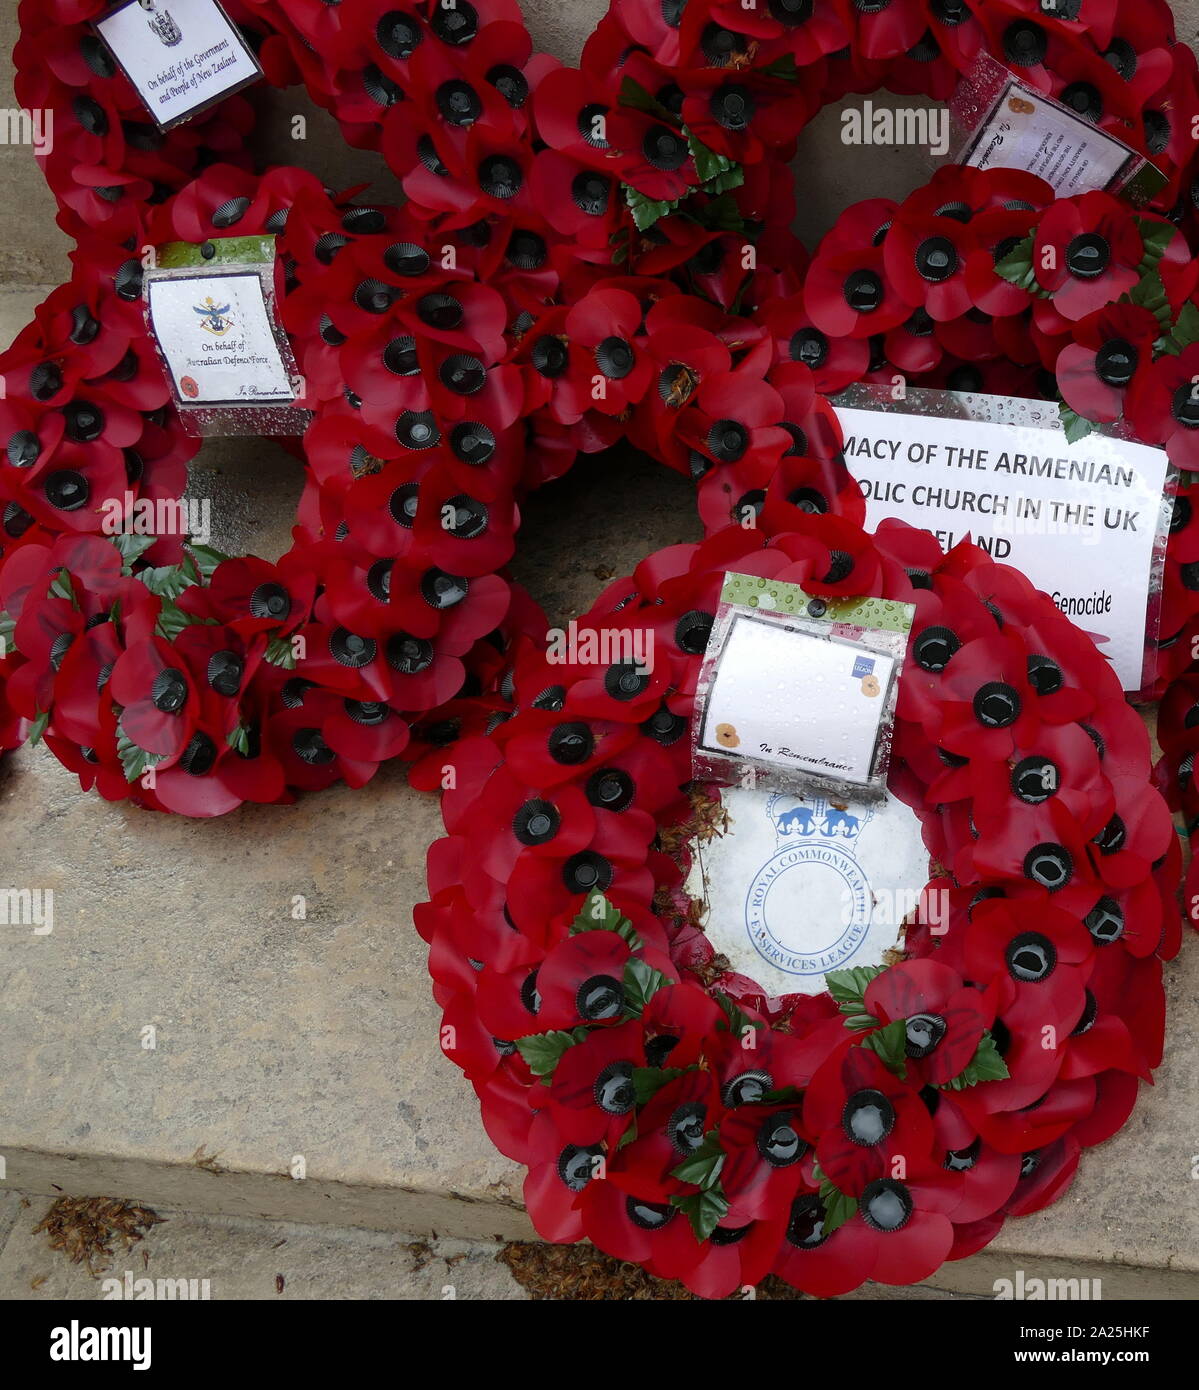 Coronas de amapolas artificiales sembradas en conmemoración de la guerra muerta en el cenotafio, Londres, Reino Unido. Foto de stock